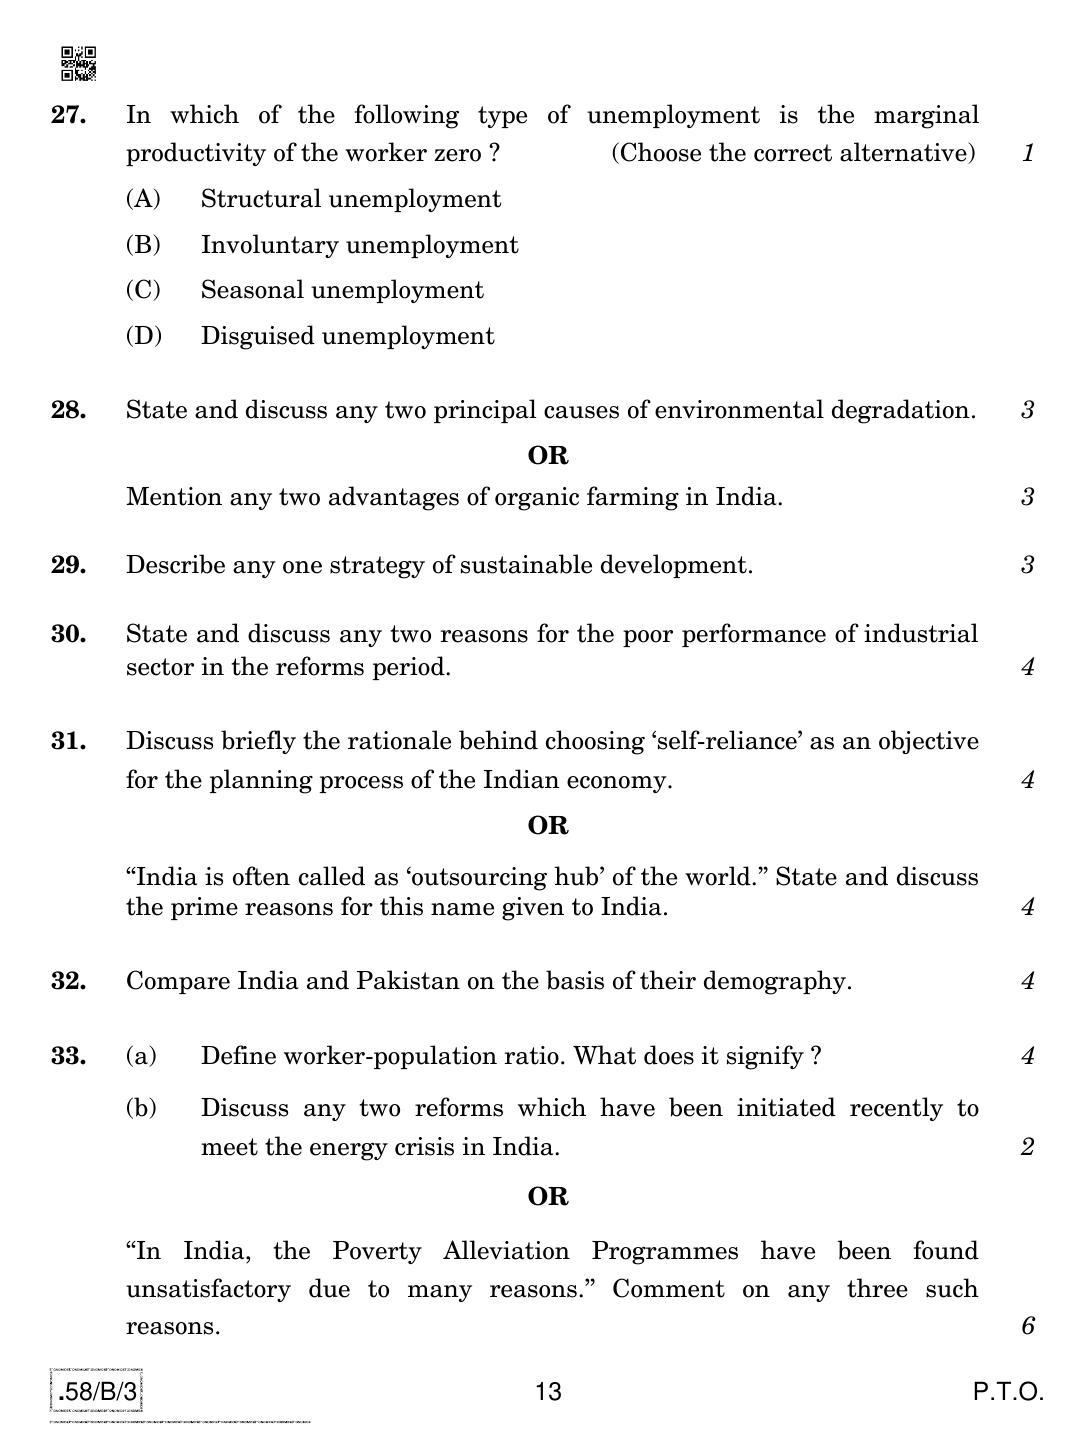 CBSE Class 12 58-C-3 - Economics 2020 Compartment Question Paper - Page 13